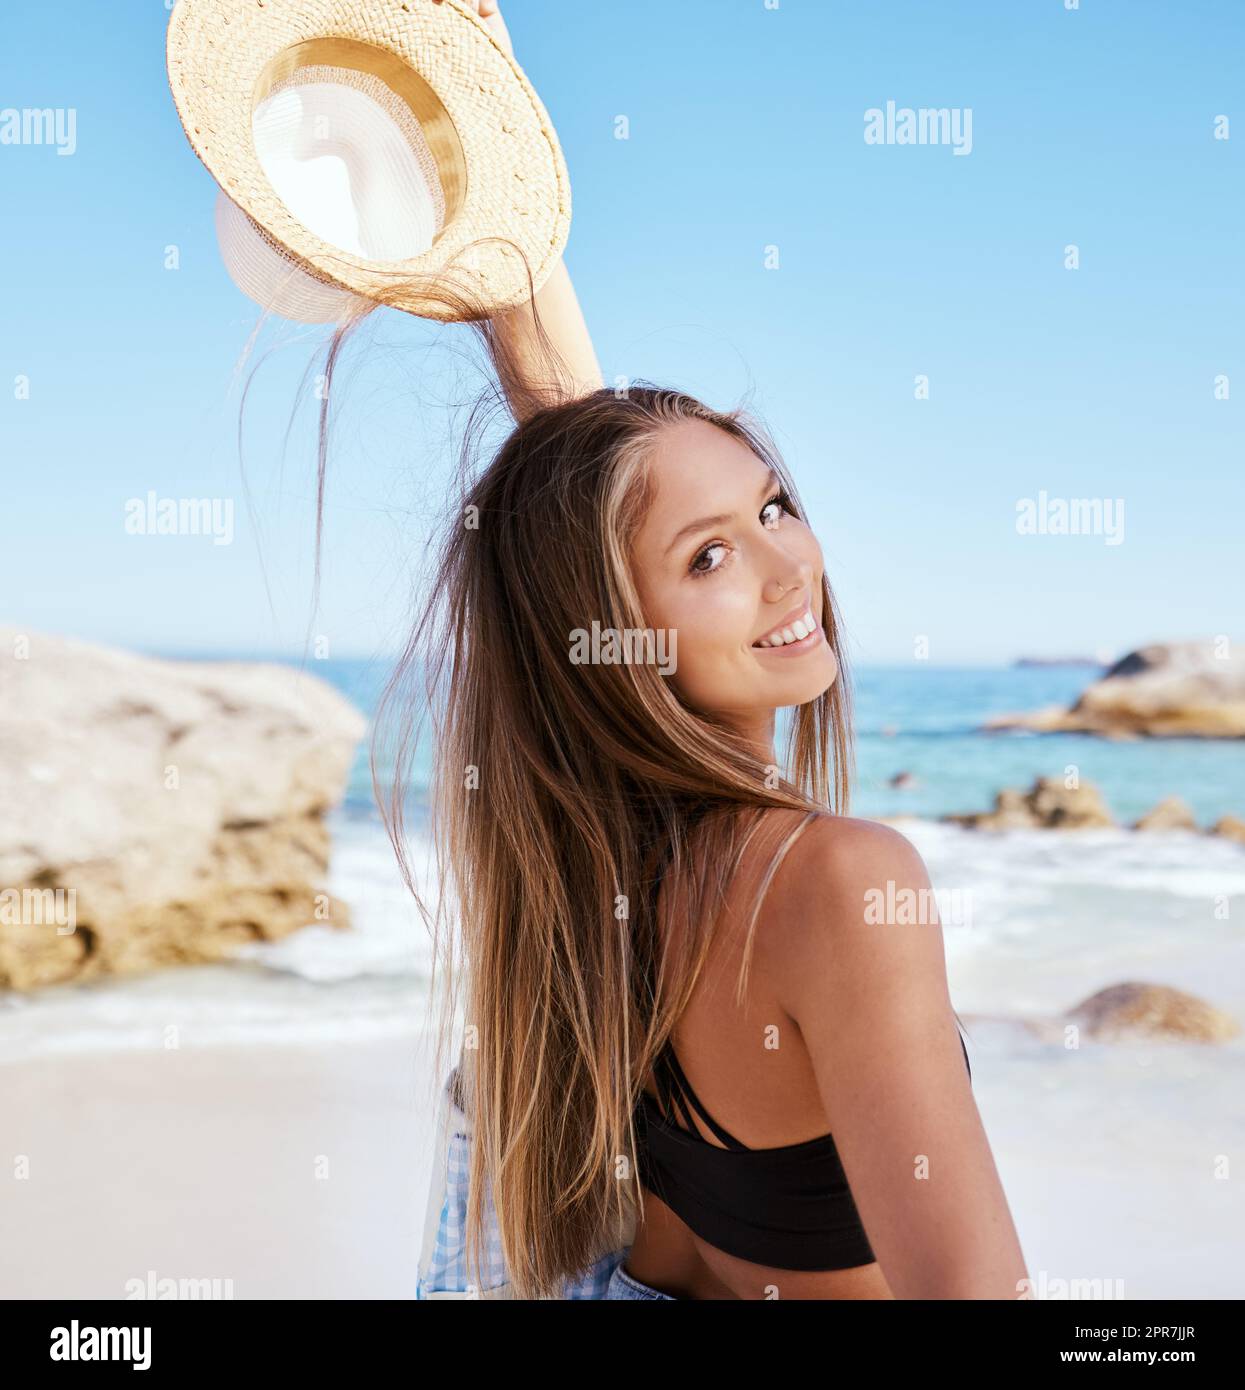 Eine wunderschöne junge weiße Frau, die sich am Strand entspannt. Genießen Sie einen Sommerurlaub oder einen Urlaub im Freien im Sommer. Sich frei nehmen und dem Alltag entfliehen. Den Tag alleine draußen zu verbringen Stockfoto